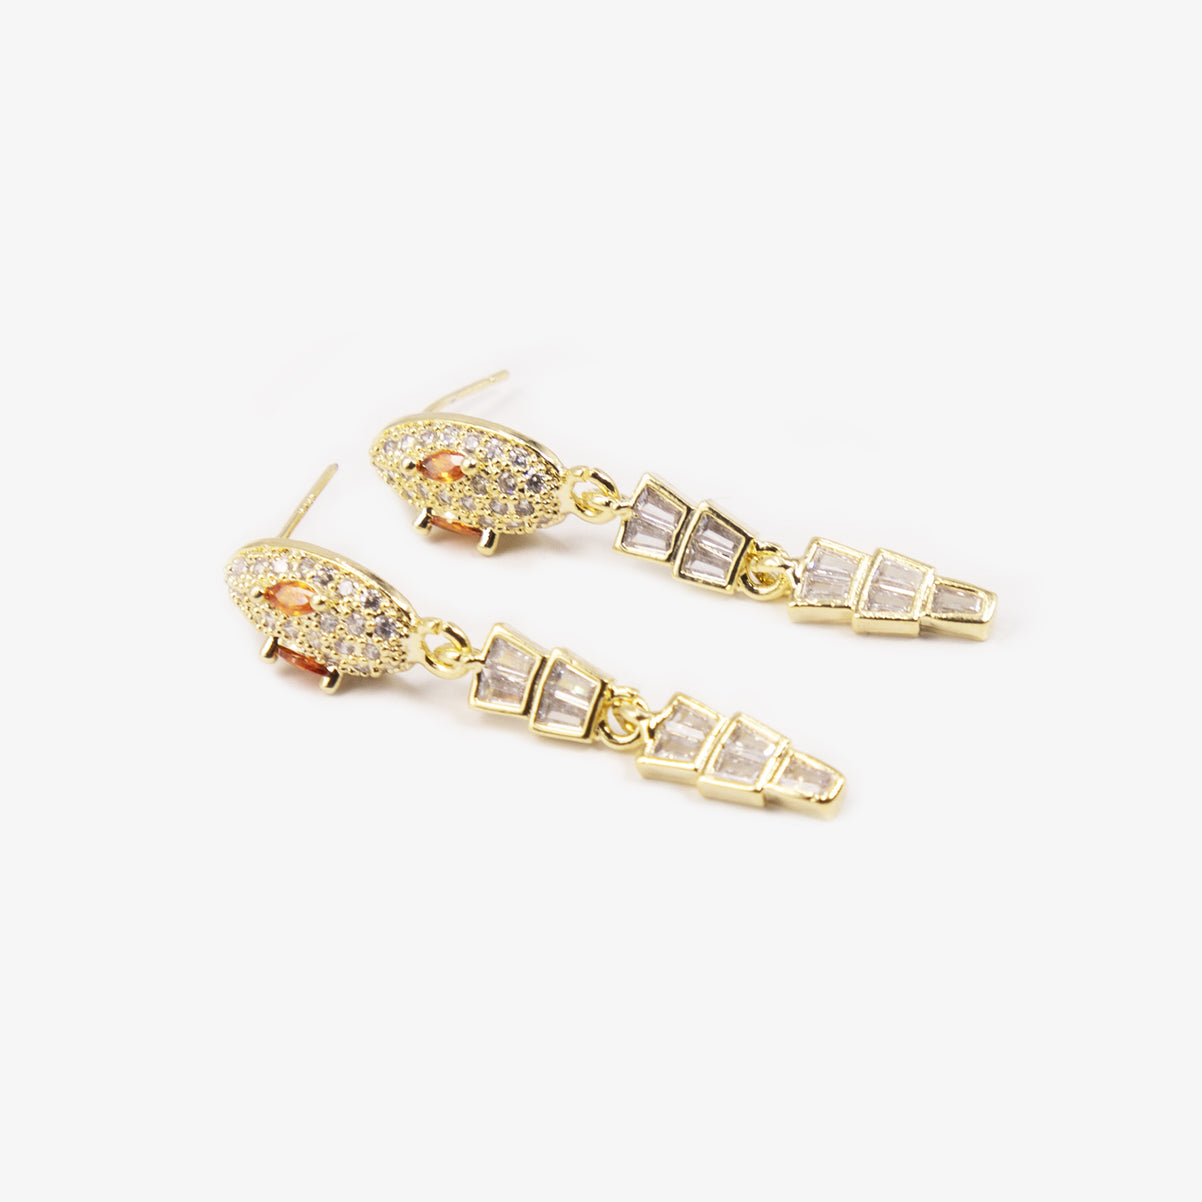 Designer model gold-plated snake brilliant zircon fashion earrings